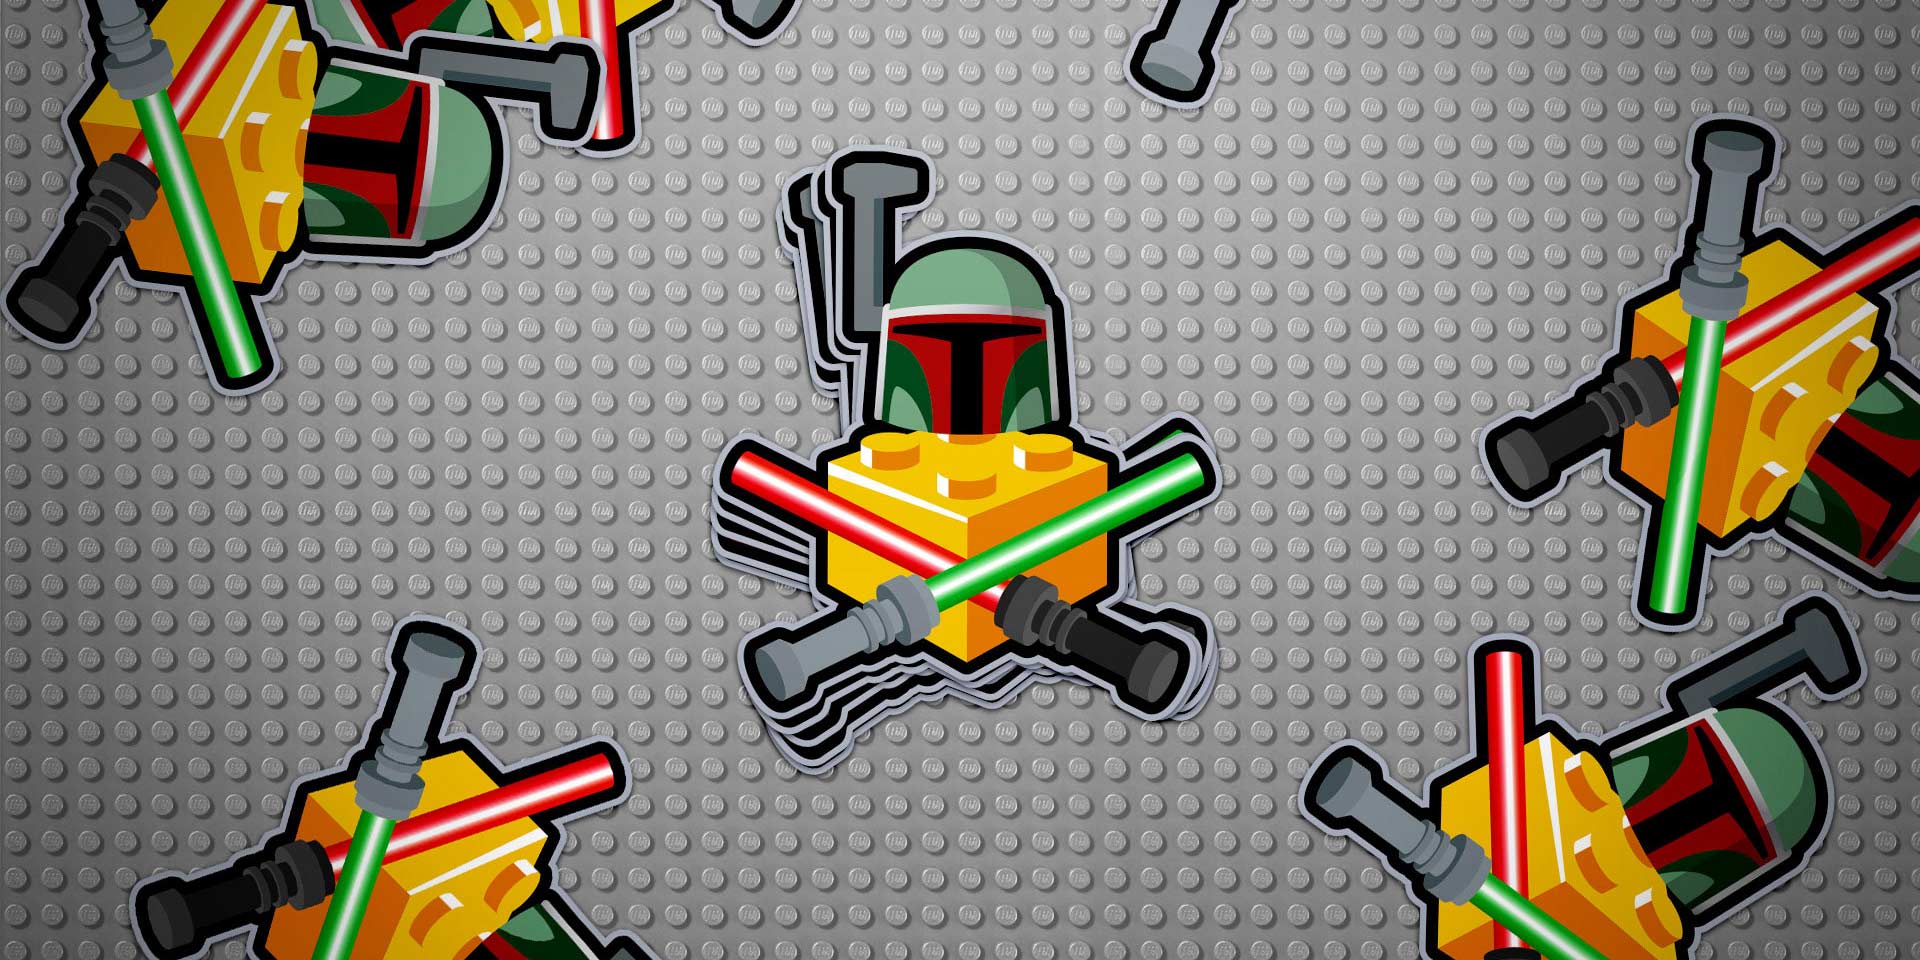 lego star wars logo stickers